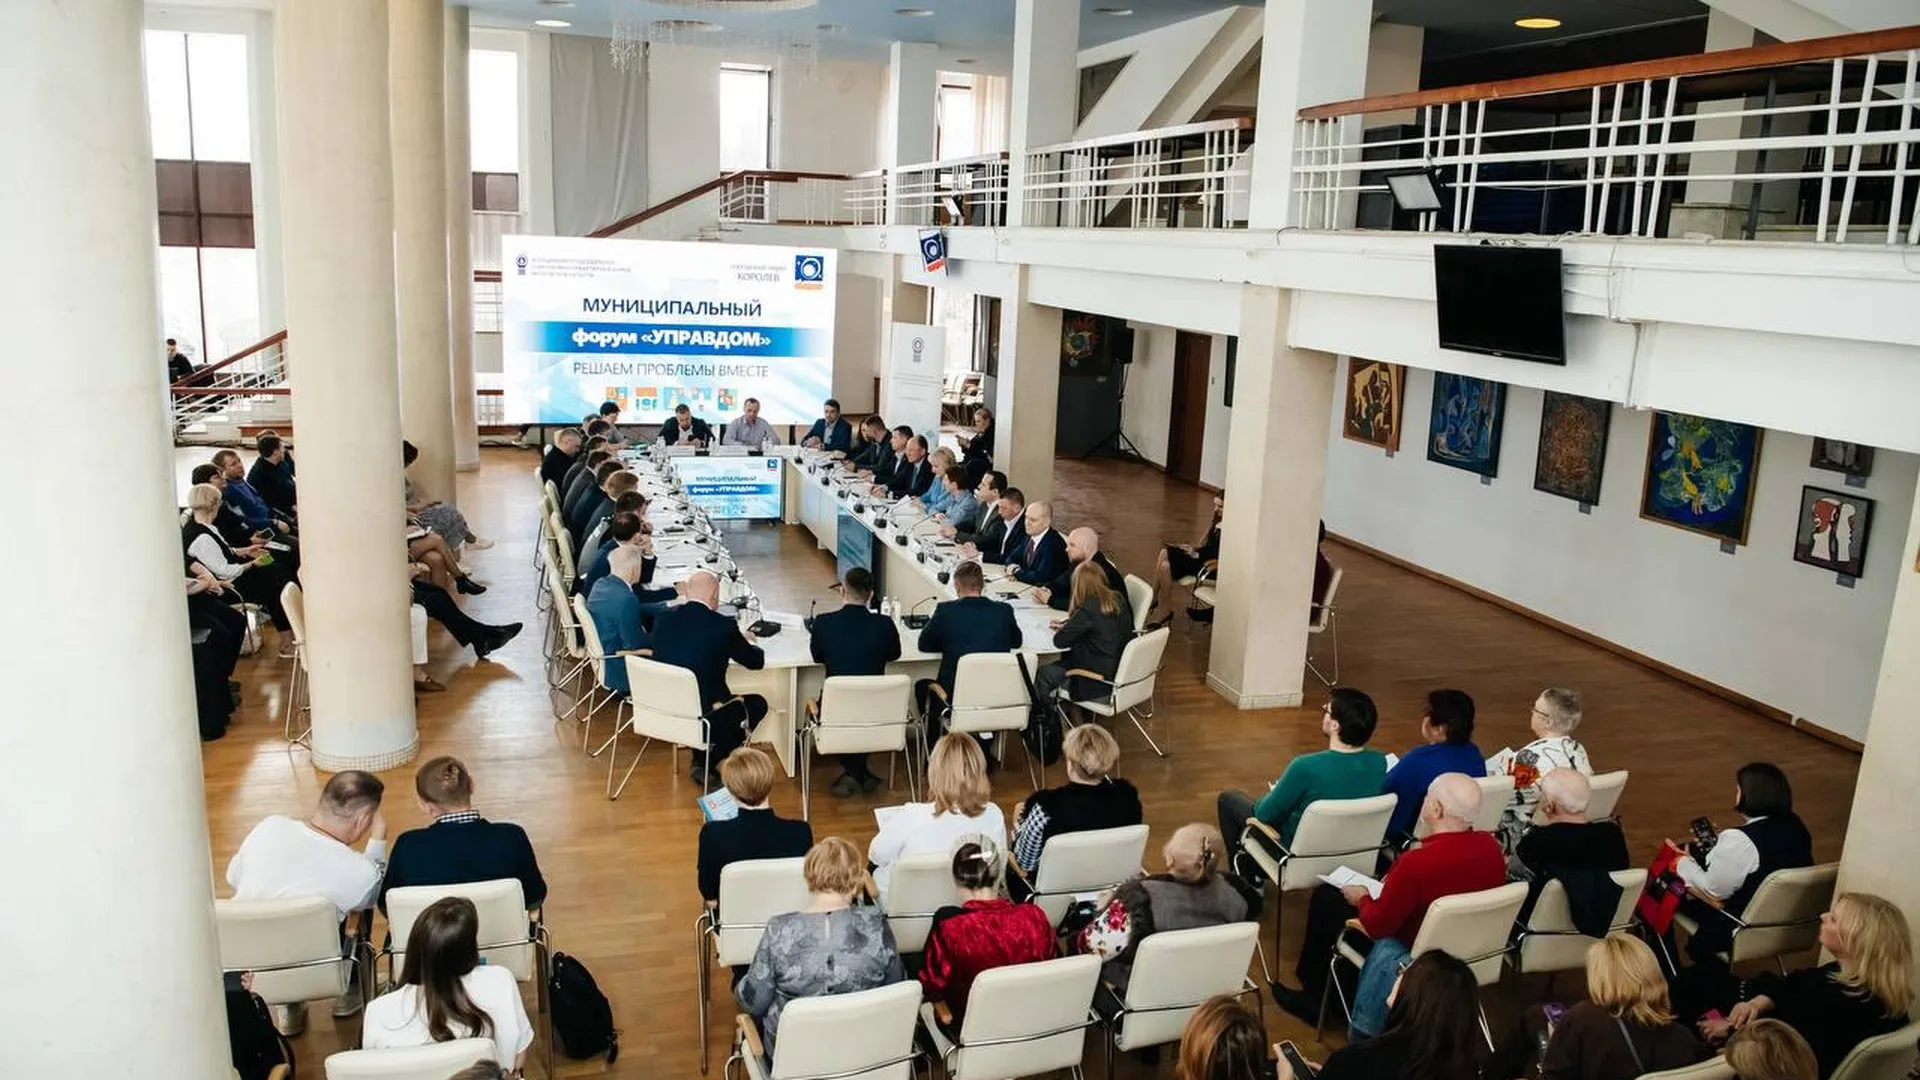 Глава г. о. Пушкинский поучаствовал в обсуждениях вопросов ЖКХ на межмуниципальном форуме «Управдом»